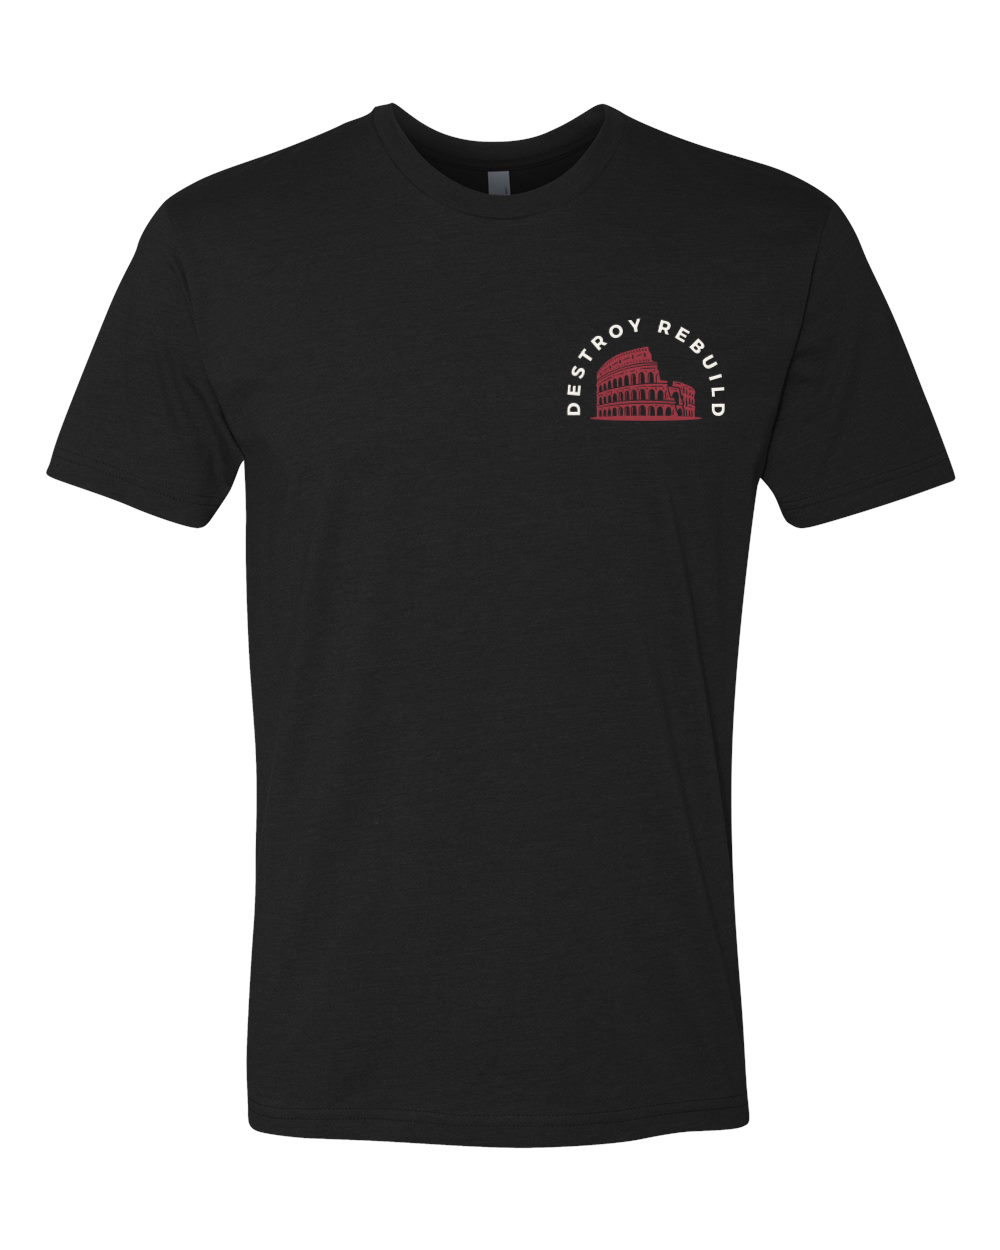 Short sleeve black shirt with Destroy Rebuild logo on front.